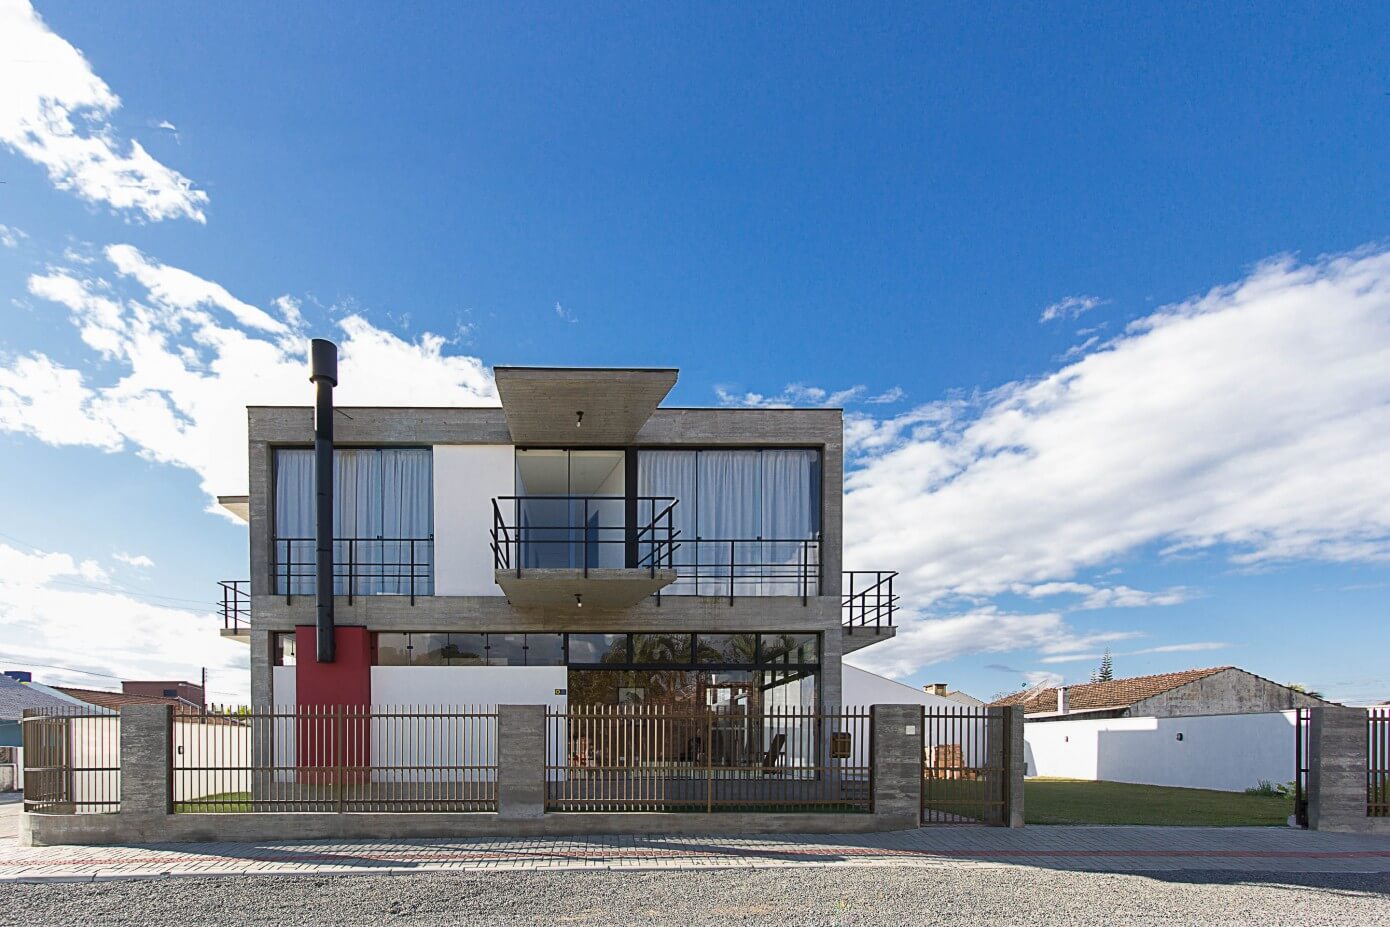 Casa D by Pablo José Vailatti